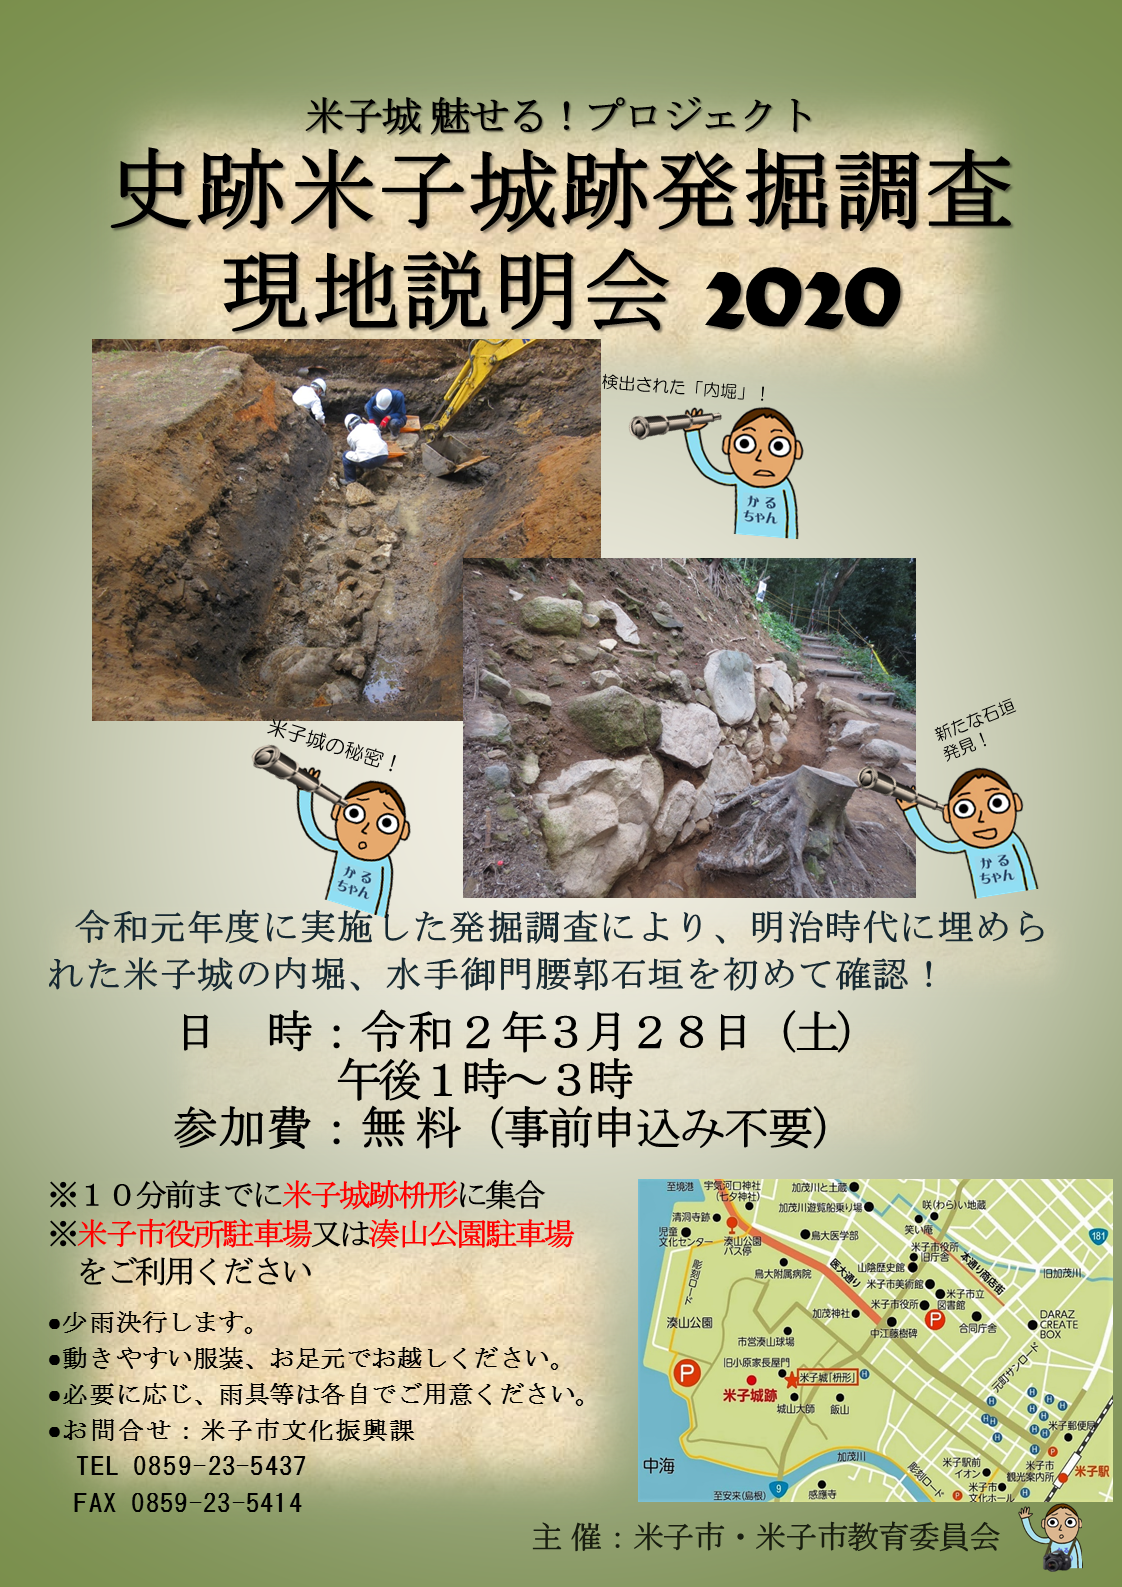 史跡米子城跡発掘調査現地説明会のチラシです